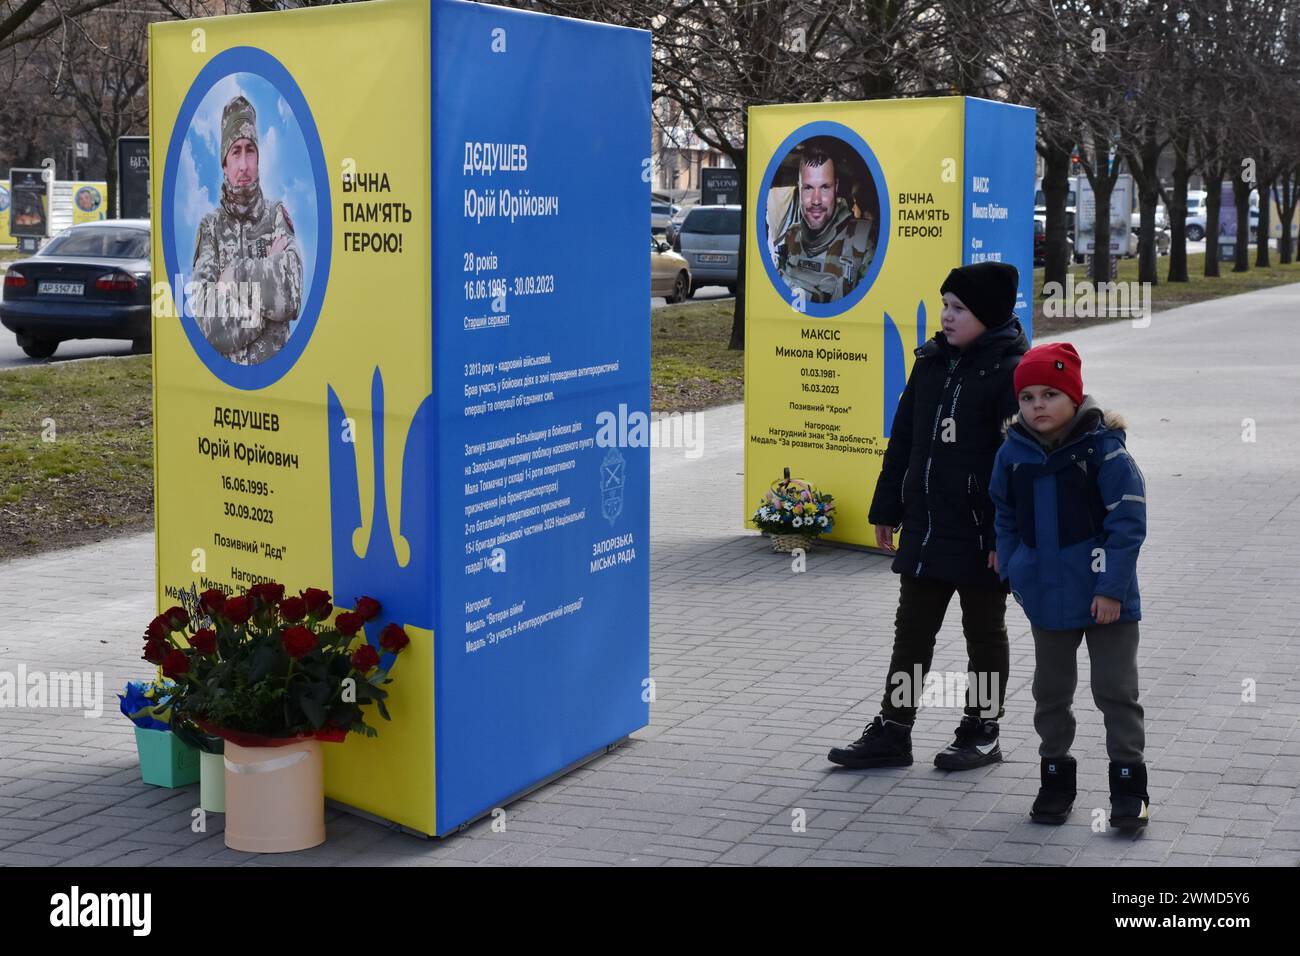 De jeunes garçons sont vus à côté des stands de portraits de soldats ukrainiens tombés au combat dans le centre de Zaporizhzhia. Le président ukrainien Volodymyr Zelensky a marqué le deuxième anniversaire de l'invasion russe en déclarant que son pays "réussira". L'Ukraine a défié les prédictions de combattre la Russie, mais il y a des signes que la guerre tourne en faveur de la Russie. Le gouvernement ukrainien a cessé de partager le nombre de ses militaires morts il y a longtemps. Mais le nombre toujours croissant de tombes fraîches, des deux côtés des lignes de front, dresse un tableau douloureusement clair. Banque D'Images